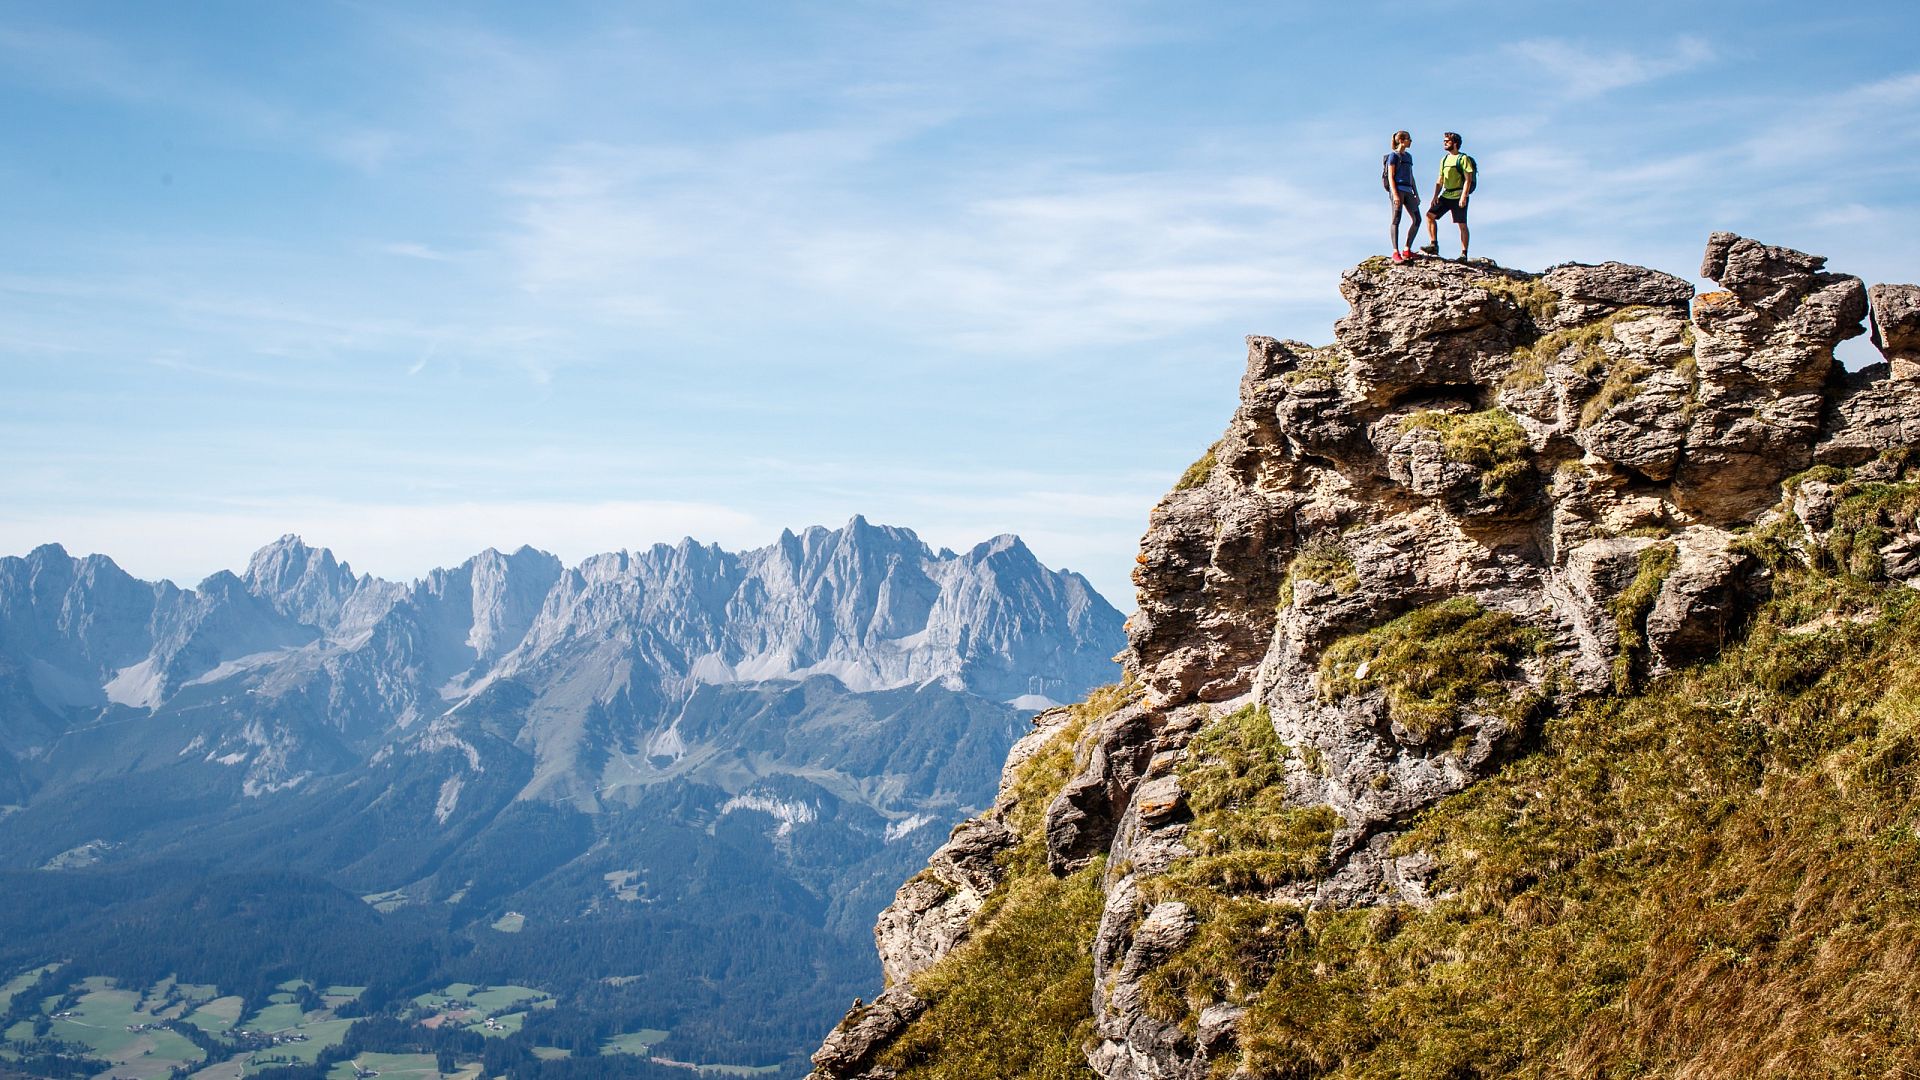 KAT Walk Kitzbüheler Alpen Wanderer auf Felsen mit Ausblick